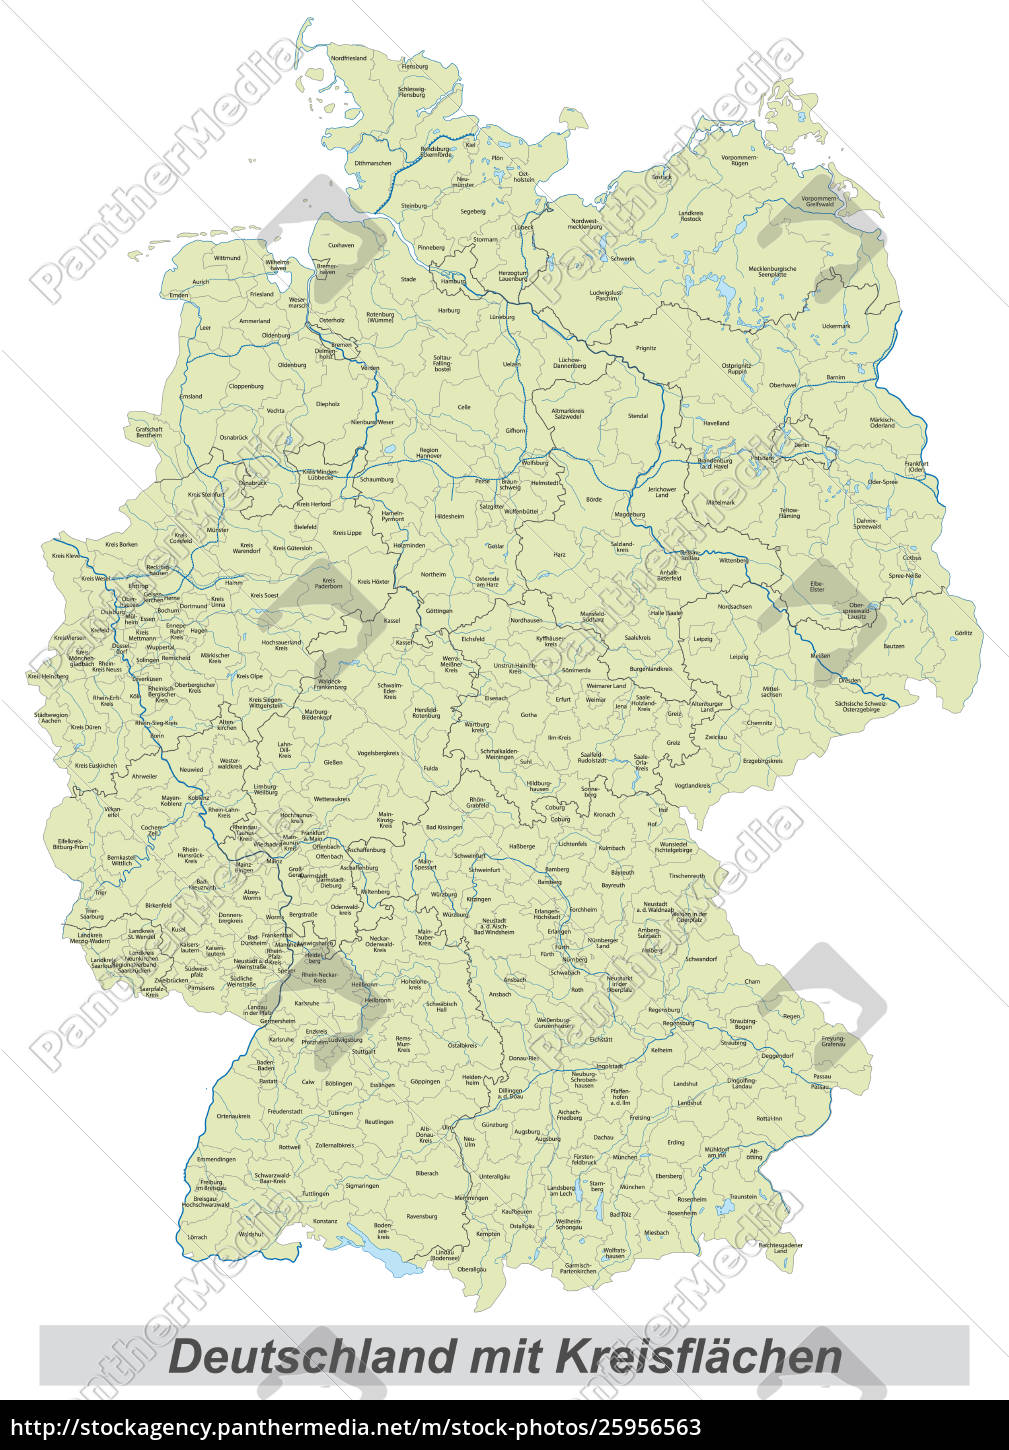 deutschlandkarte mit landkreisen - Lizenzfreies Bild - #25956563